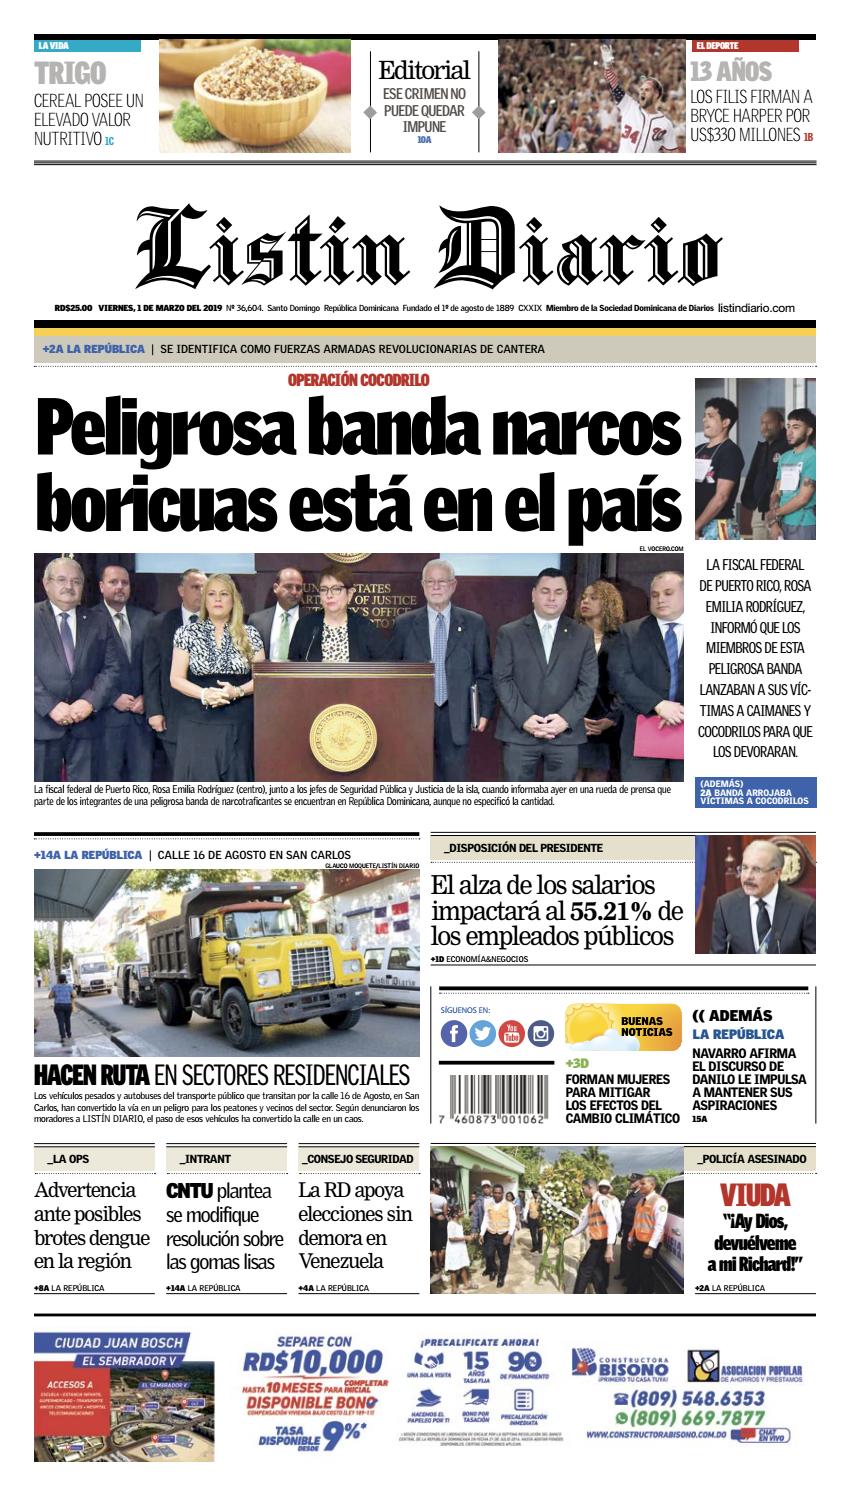 Portada Periódico Listín Diario, Viernes 01 de Marzo 2019